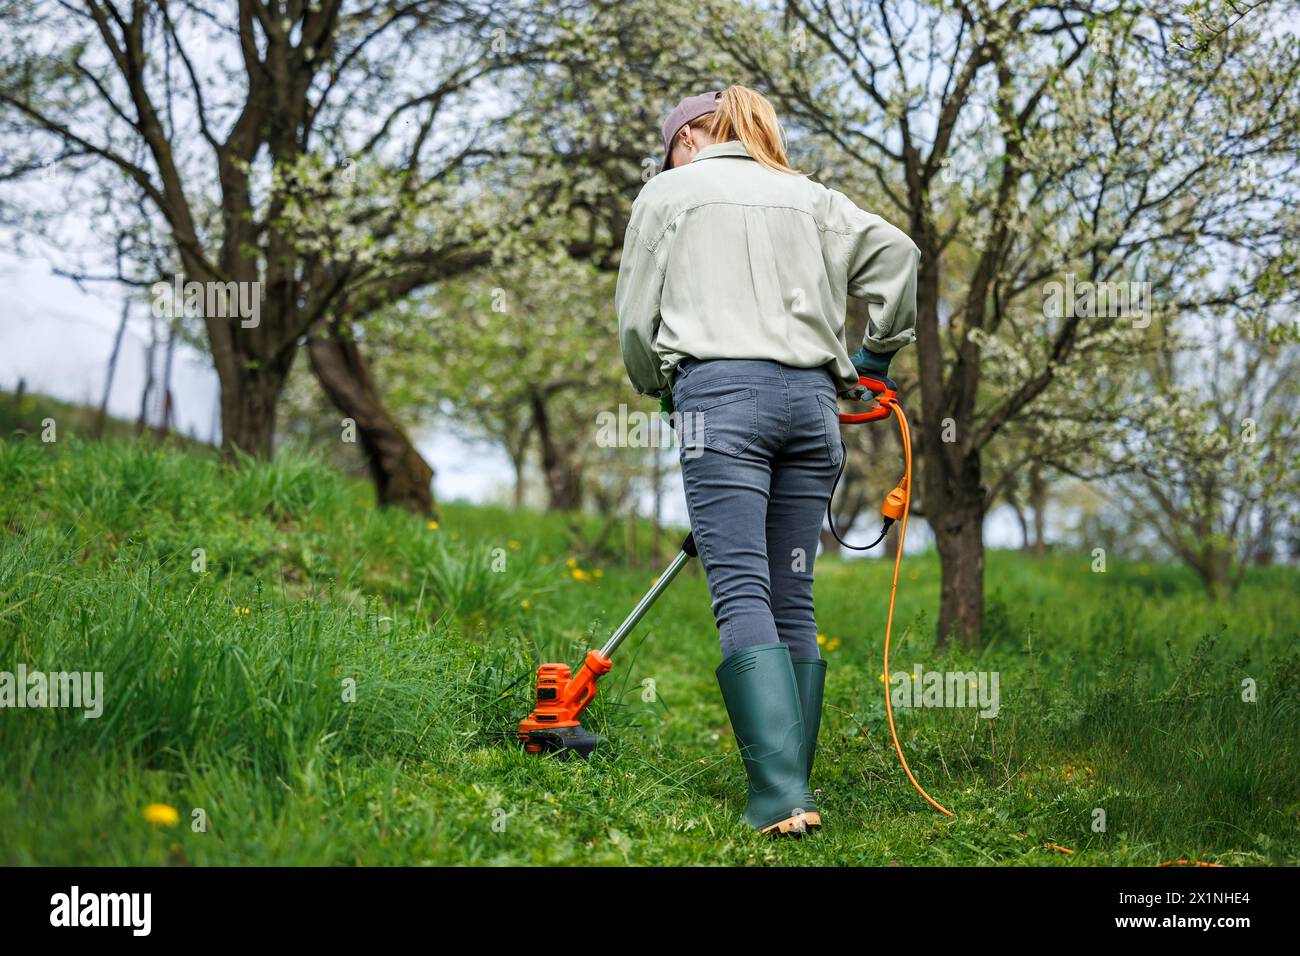 La femme coupe l'herbe par coupe-herbe dans le jardin. Tondre la pelouse dans le verger. Jardinage de printemps Banque D'Images